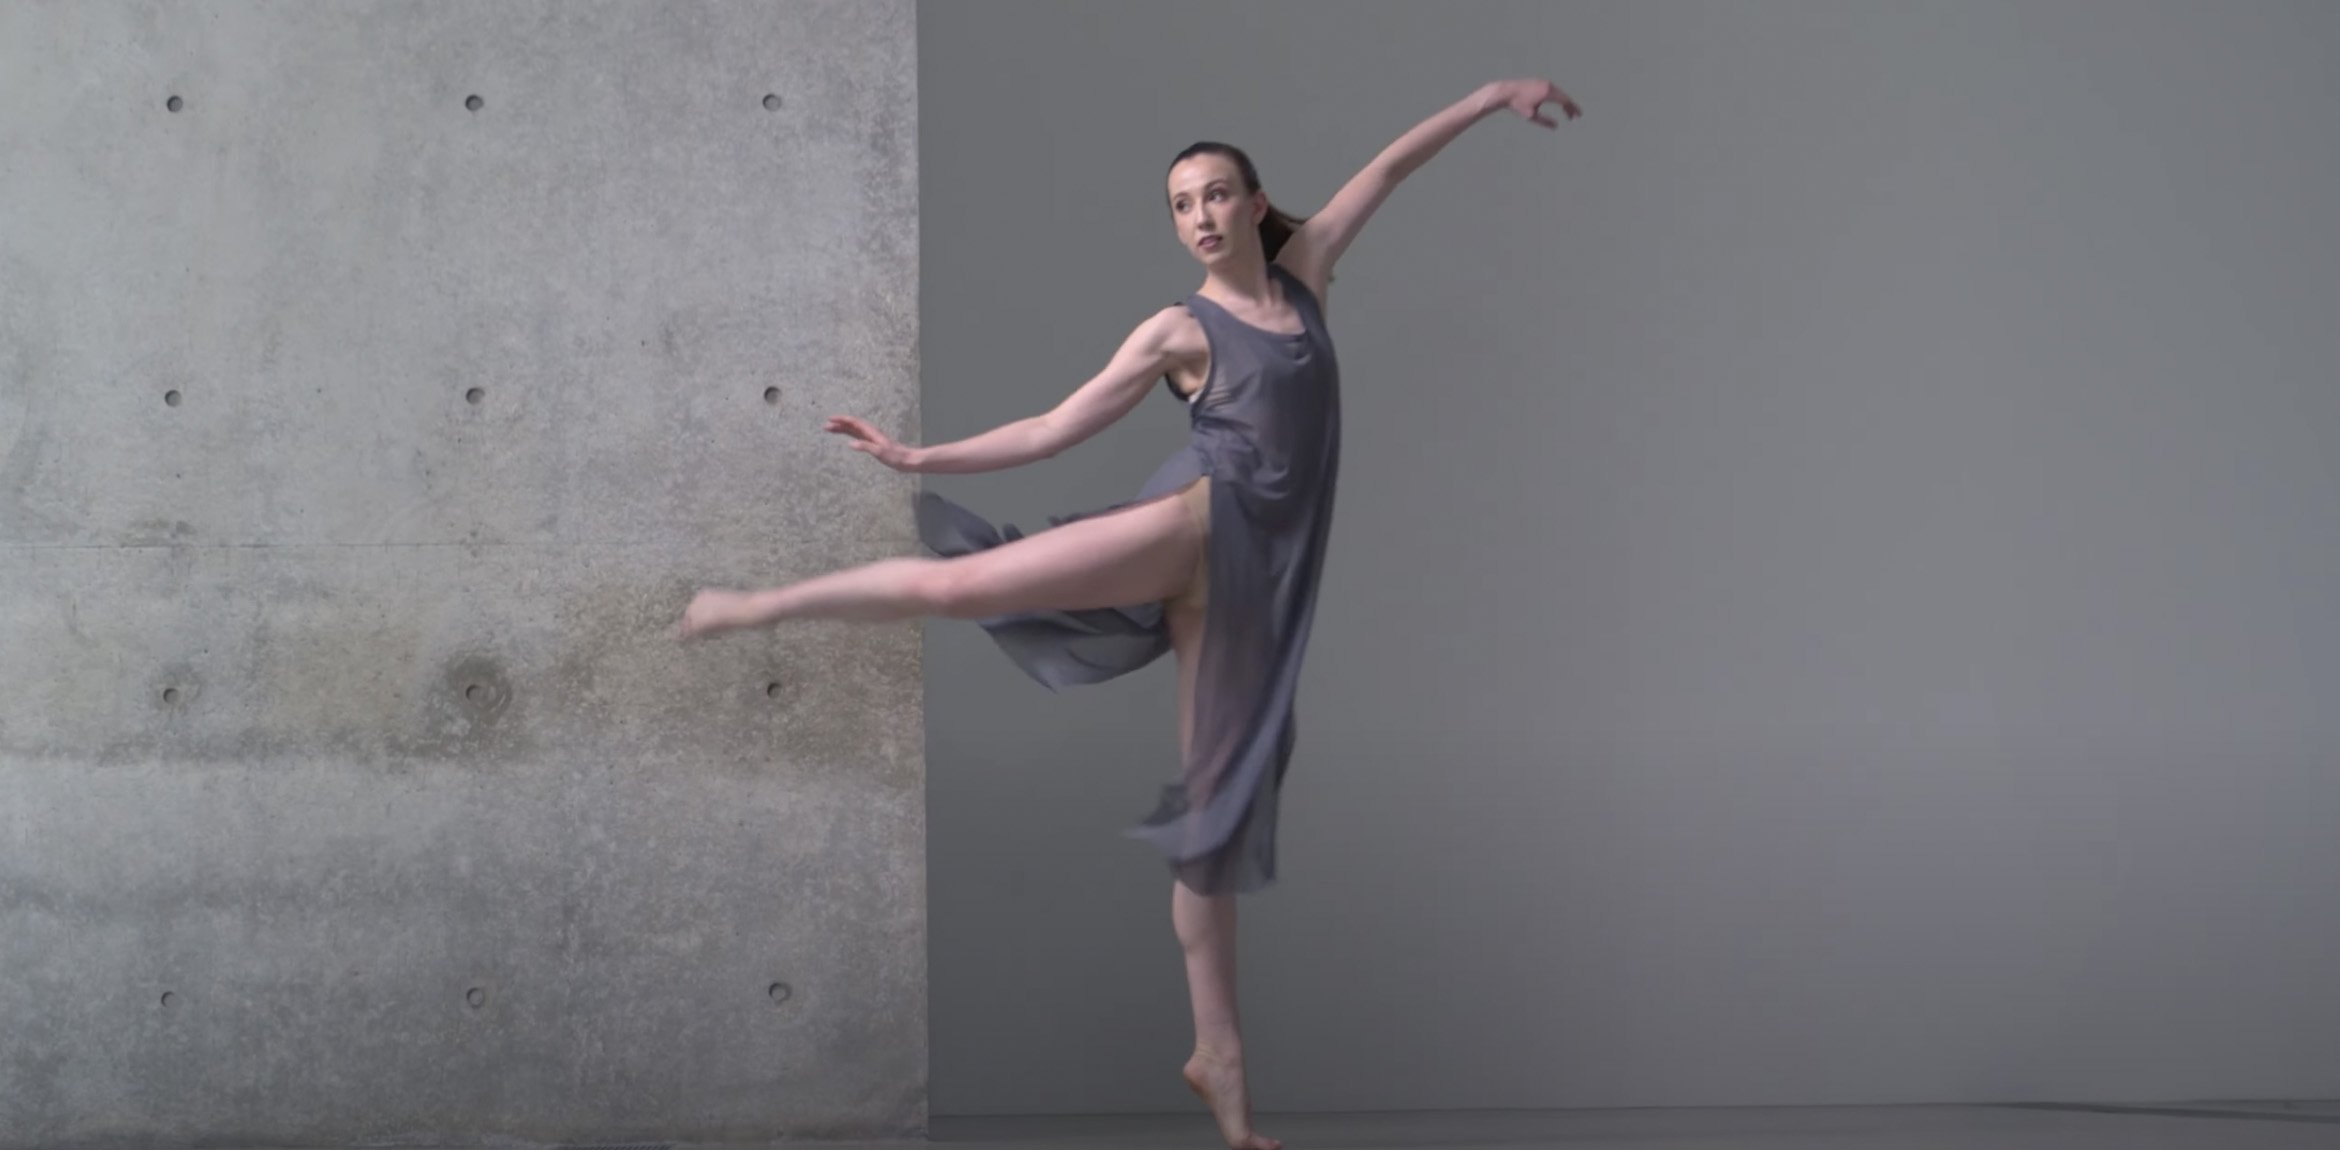 Dancer in a flowy grey dress en point